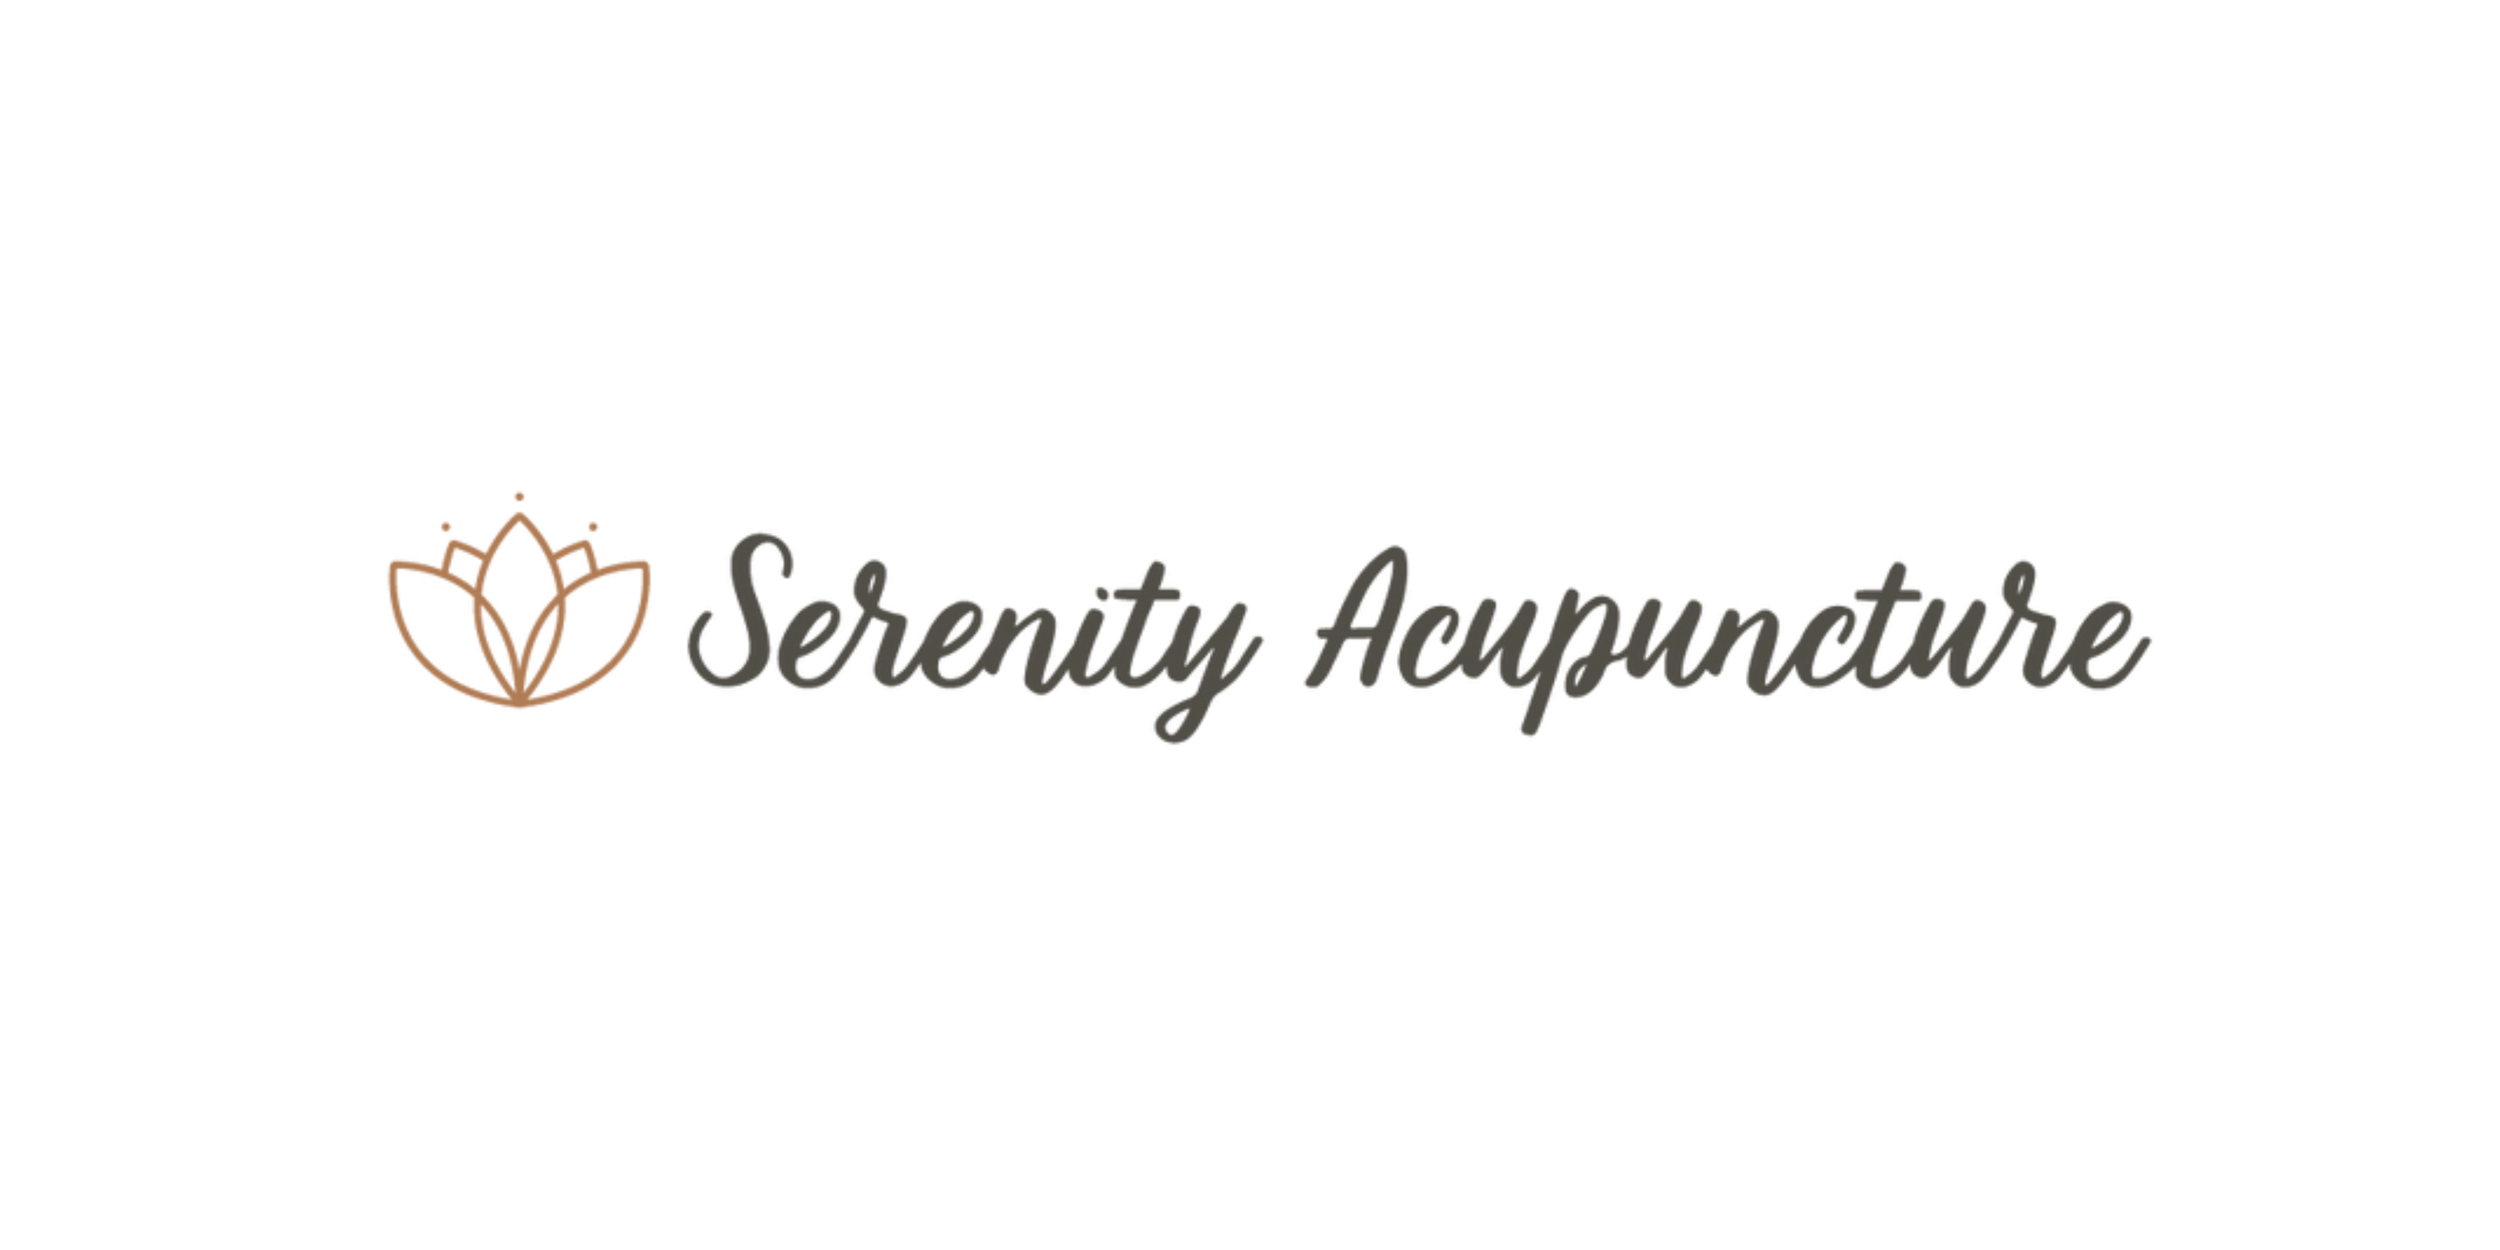 Serenity Acupuncture (Copy) (Copy) (Copy) (Copy) (Copy)